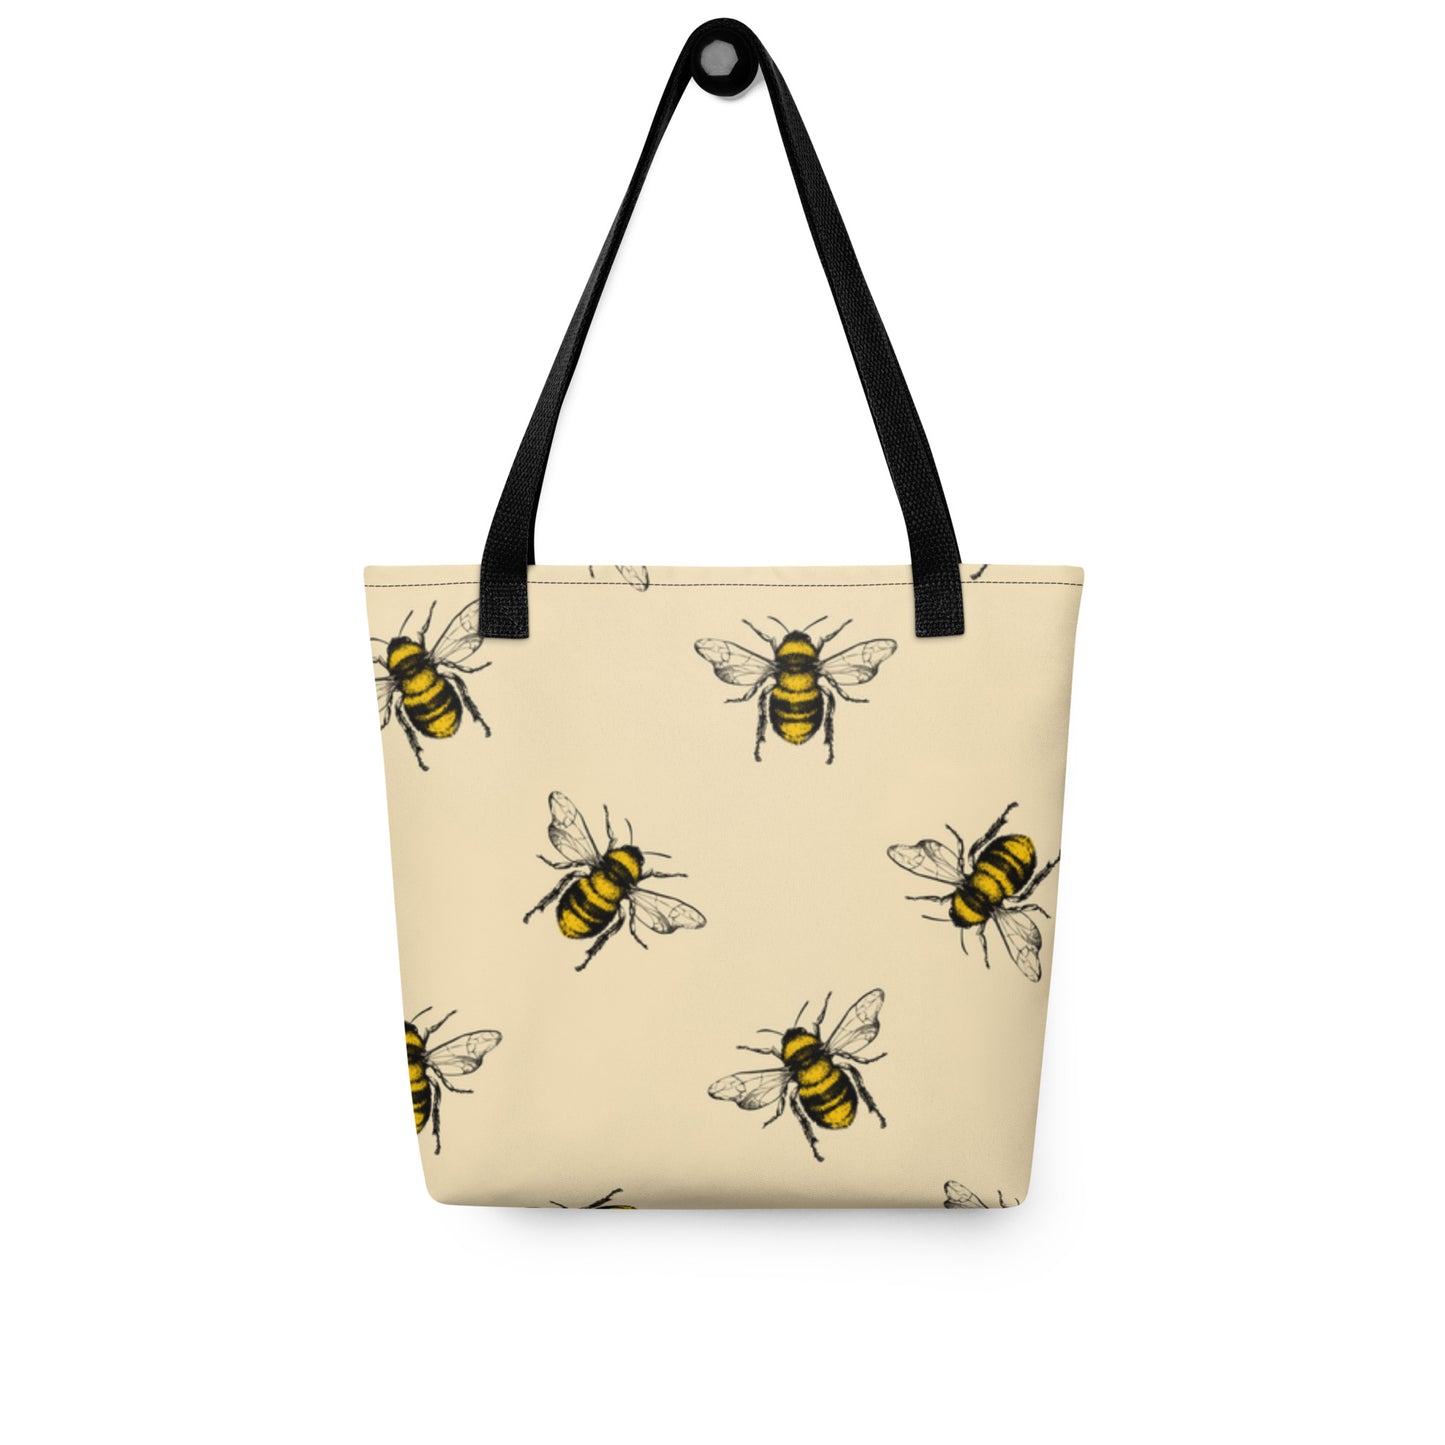 Tote bees print bag